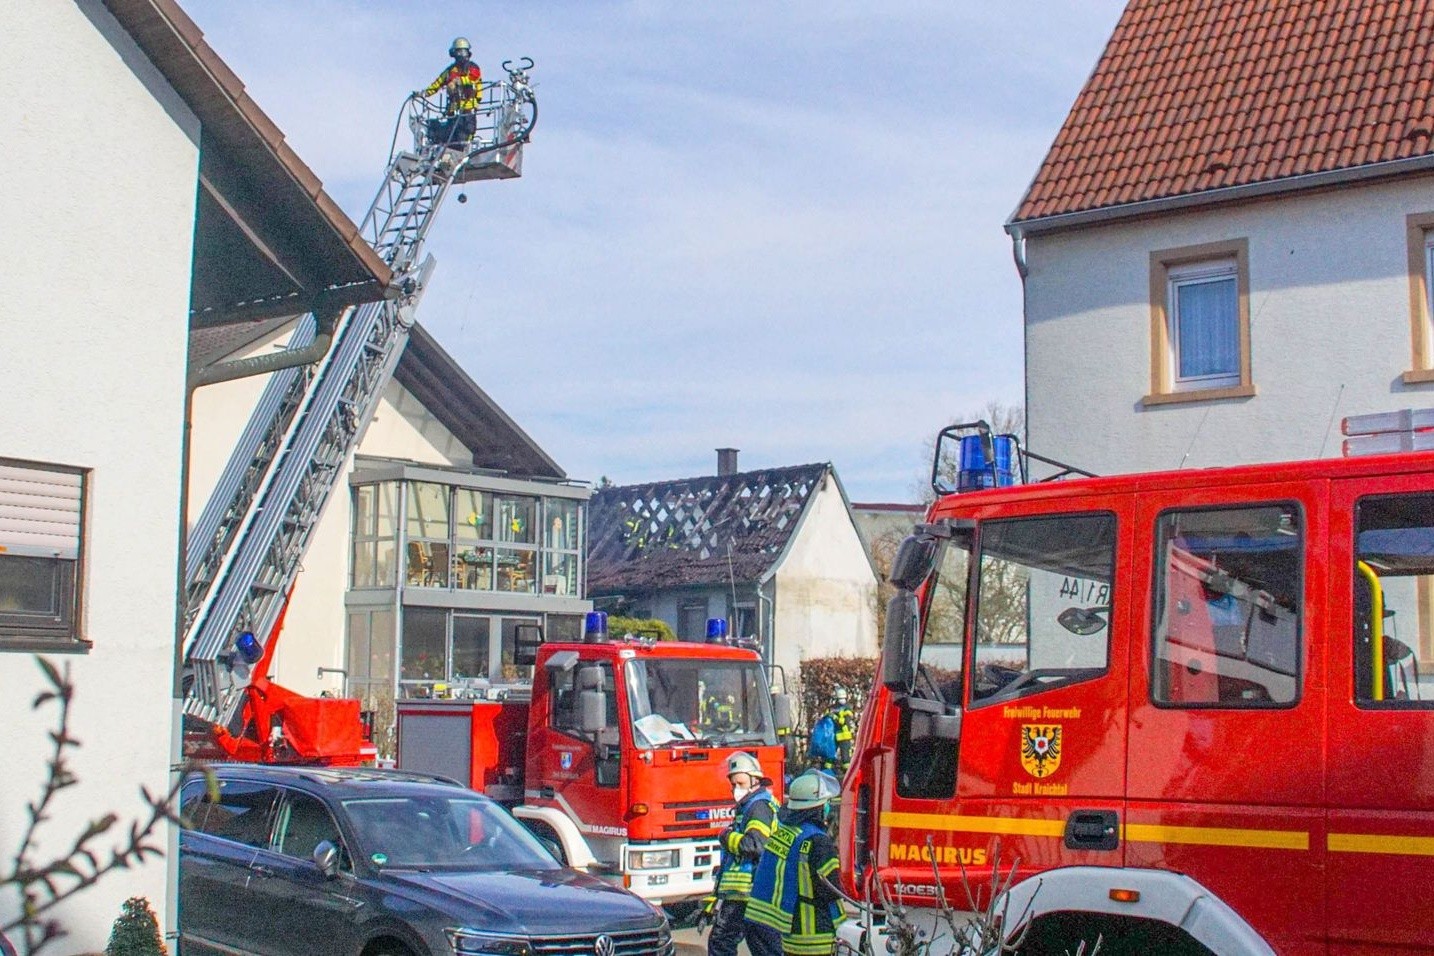 Einsatzkräfte der Feuerwehr löschen den Brand in einem Einfamilienhaus.